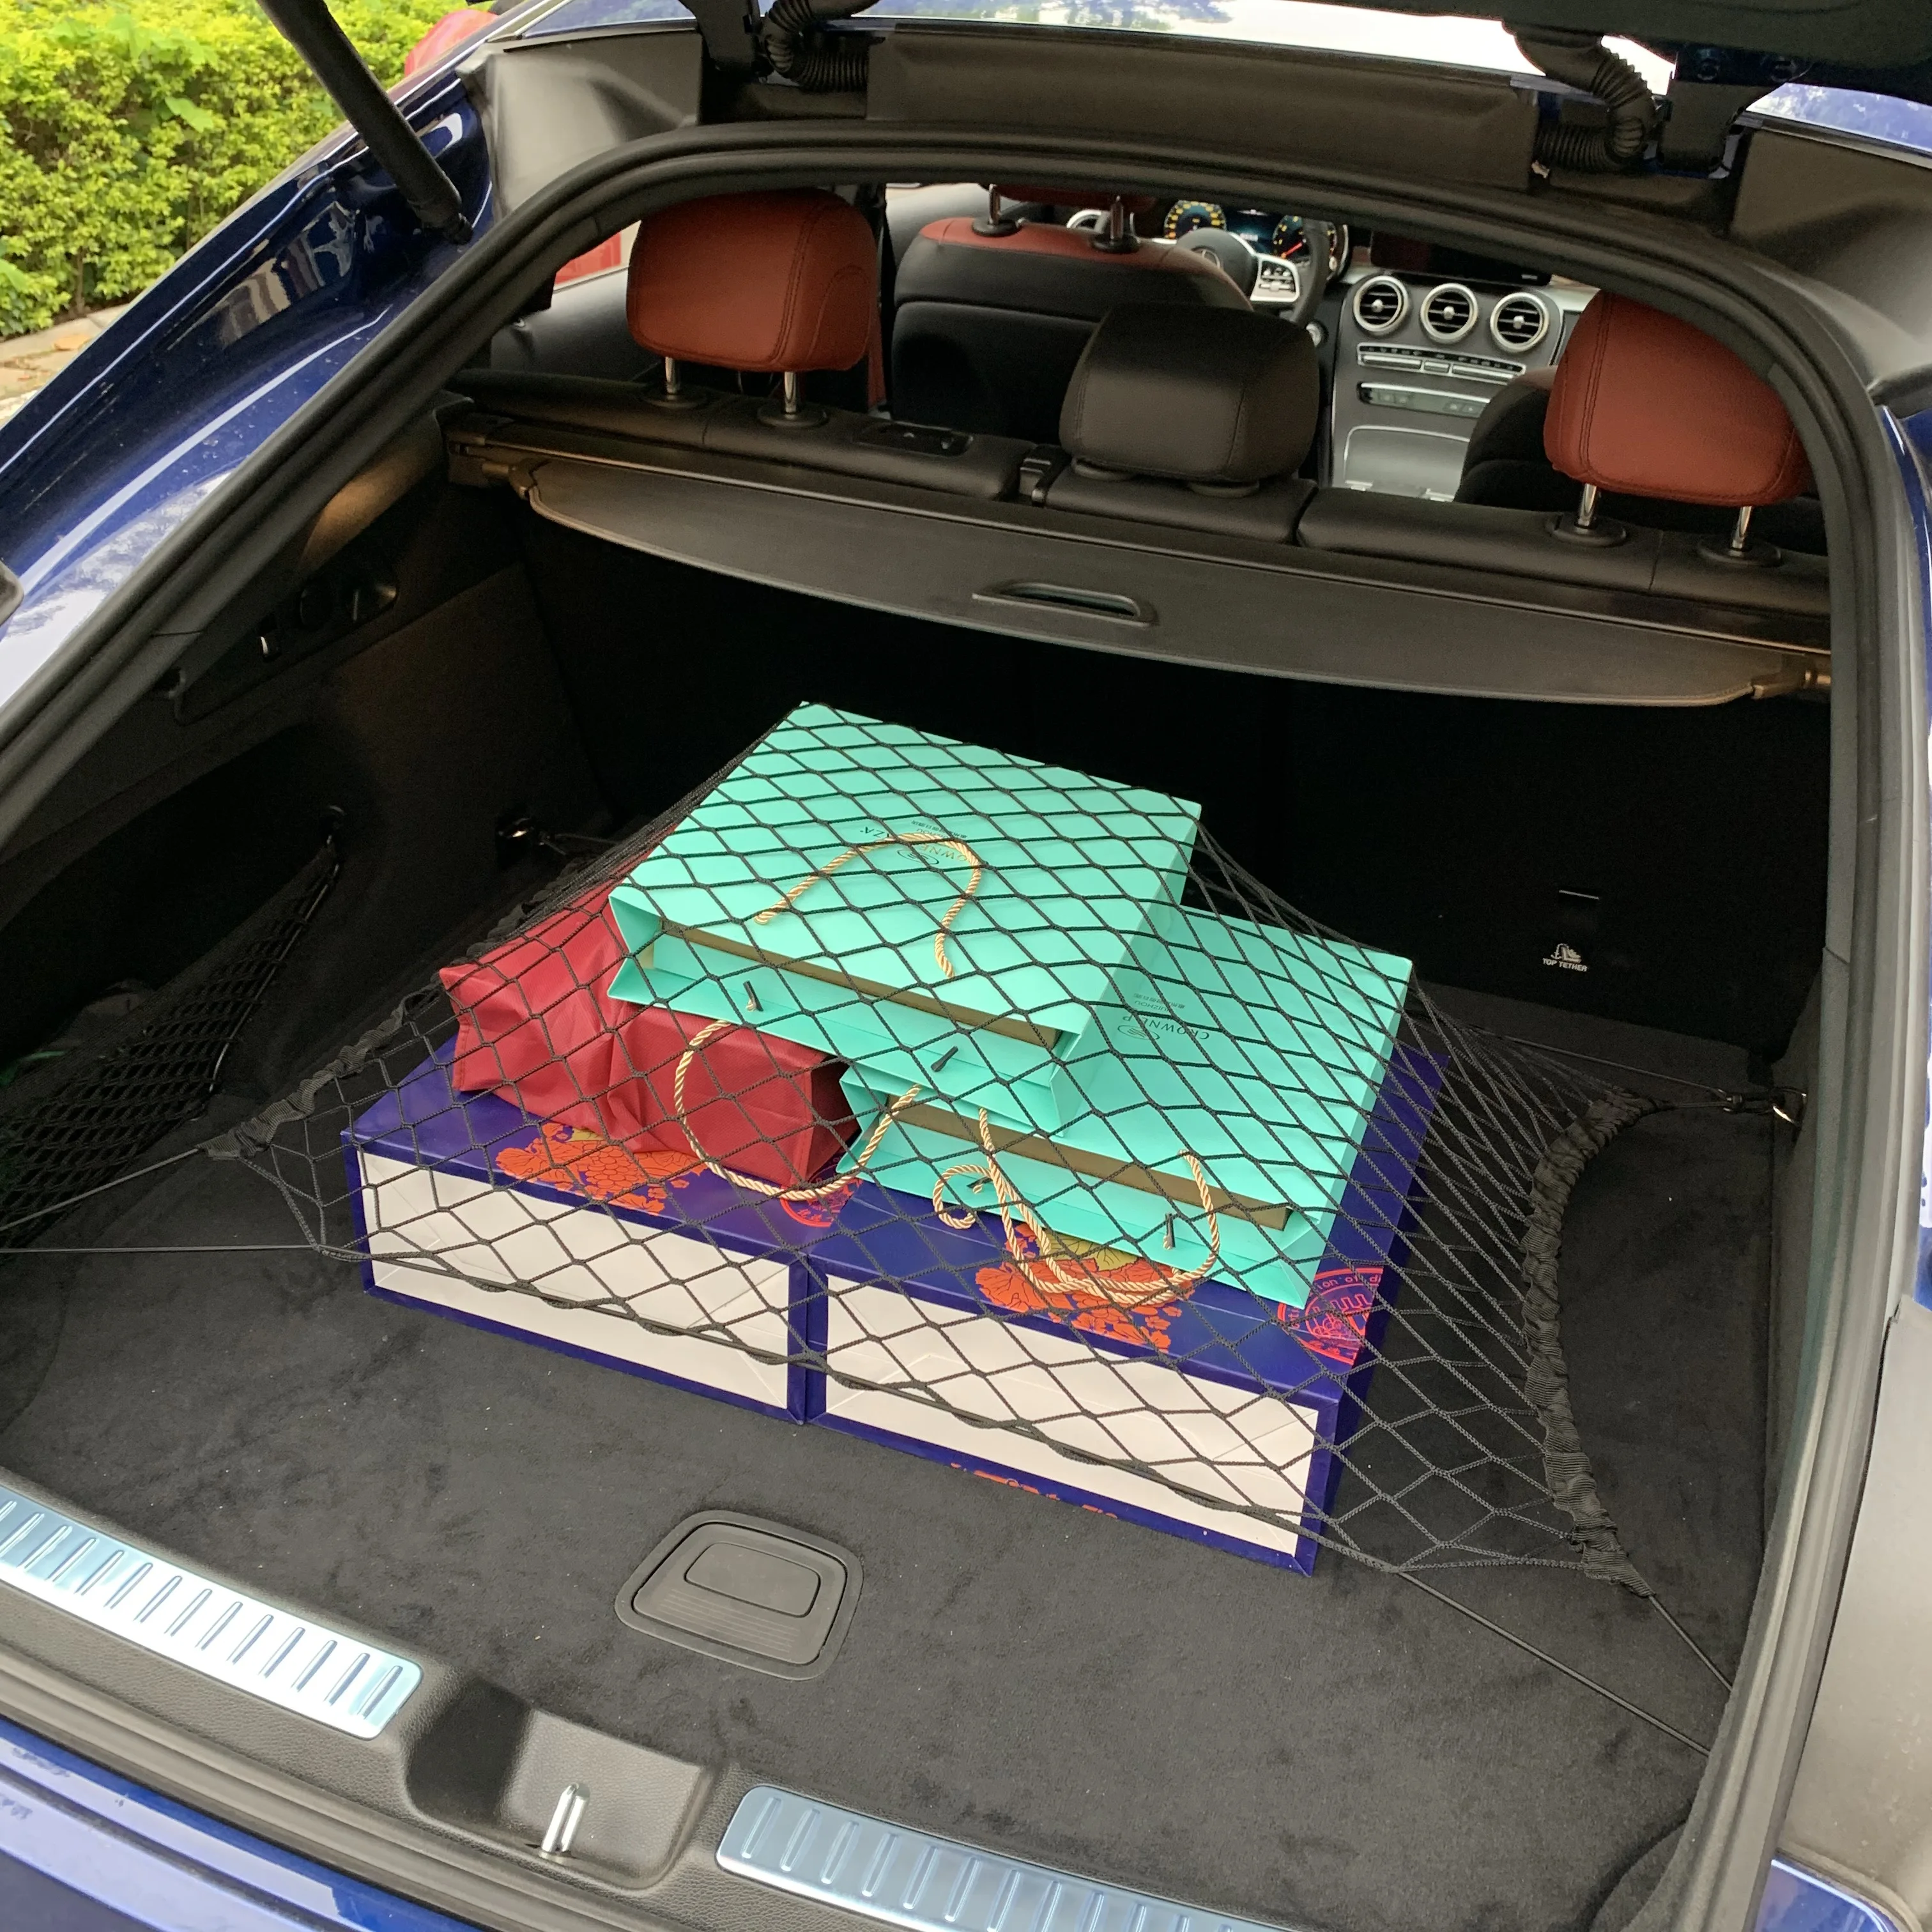 Сумка для хранения в багажнике автомобиля / подвесная сумка для сиденья, сетка для хранения большой емкости / Автомобильная обувь, сетка для баскетбольного инвентаря в багажнике